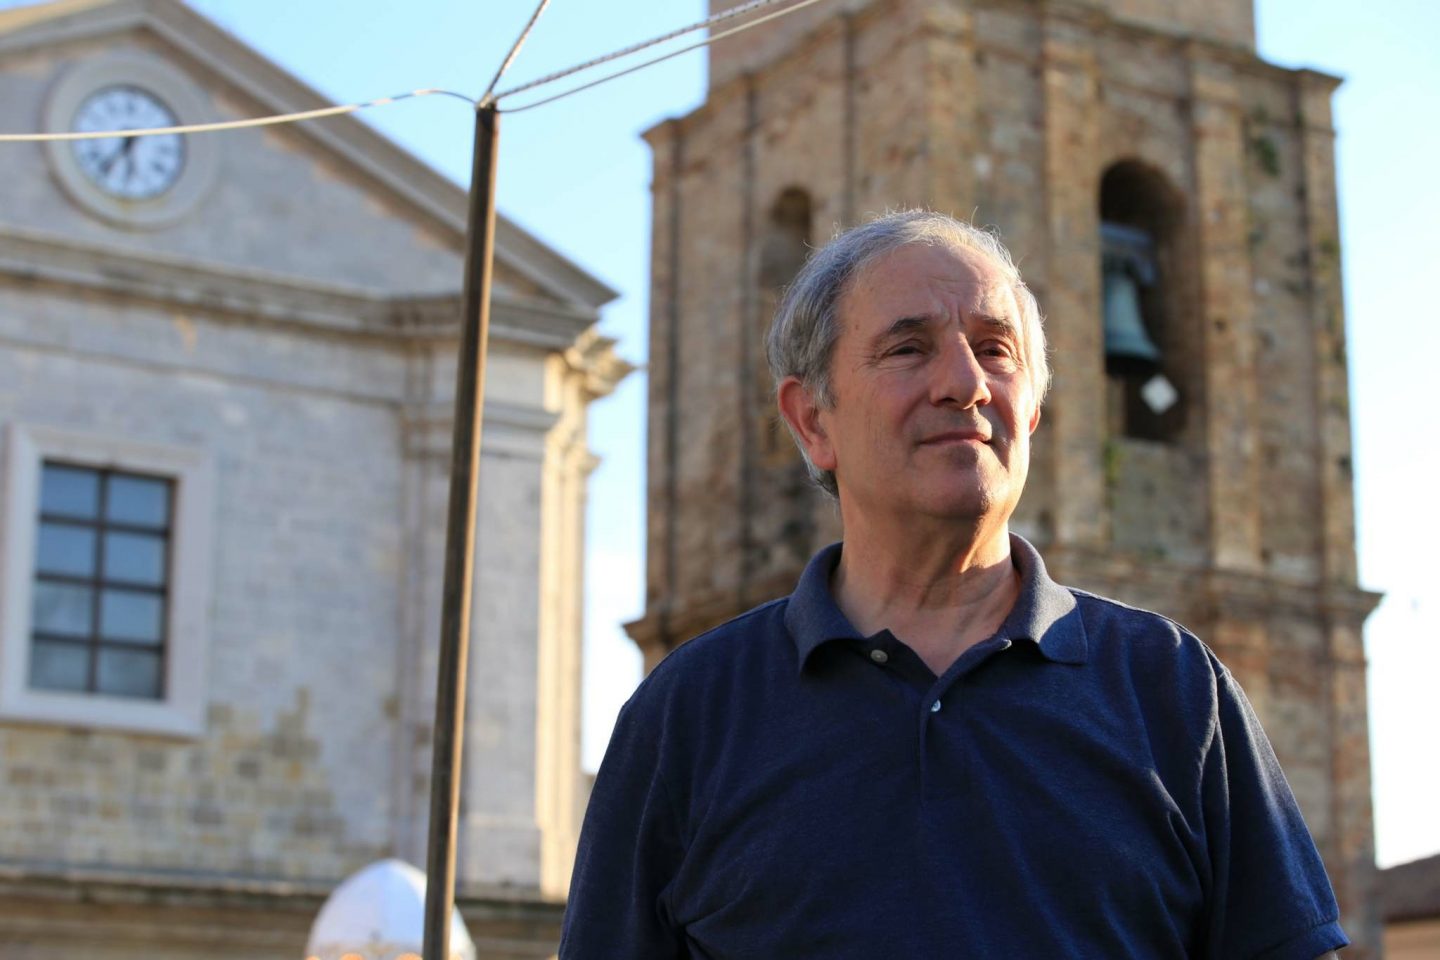 Ciao Professore! In Loving Memory of Panoram Italia’s Co-Founder, Prof. Filippo Salvatore